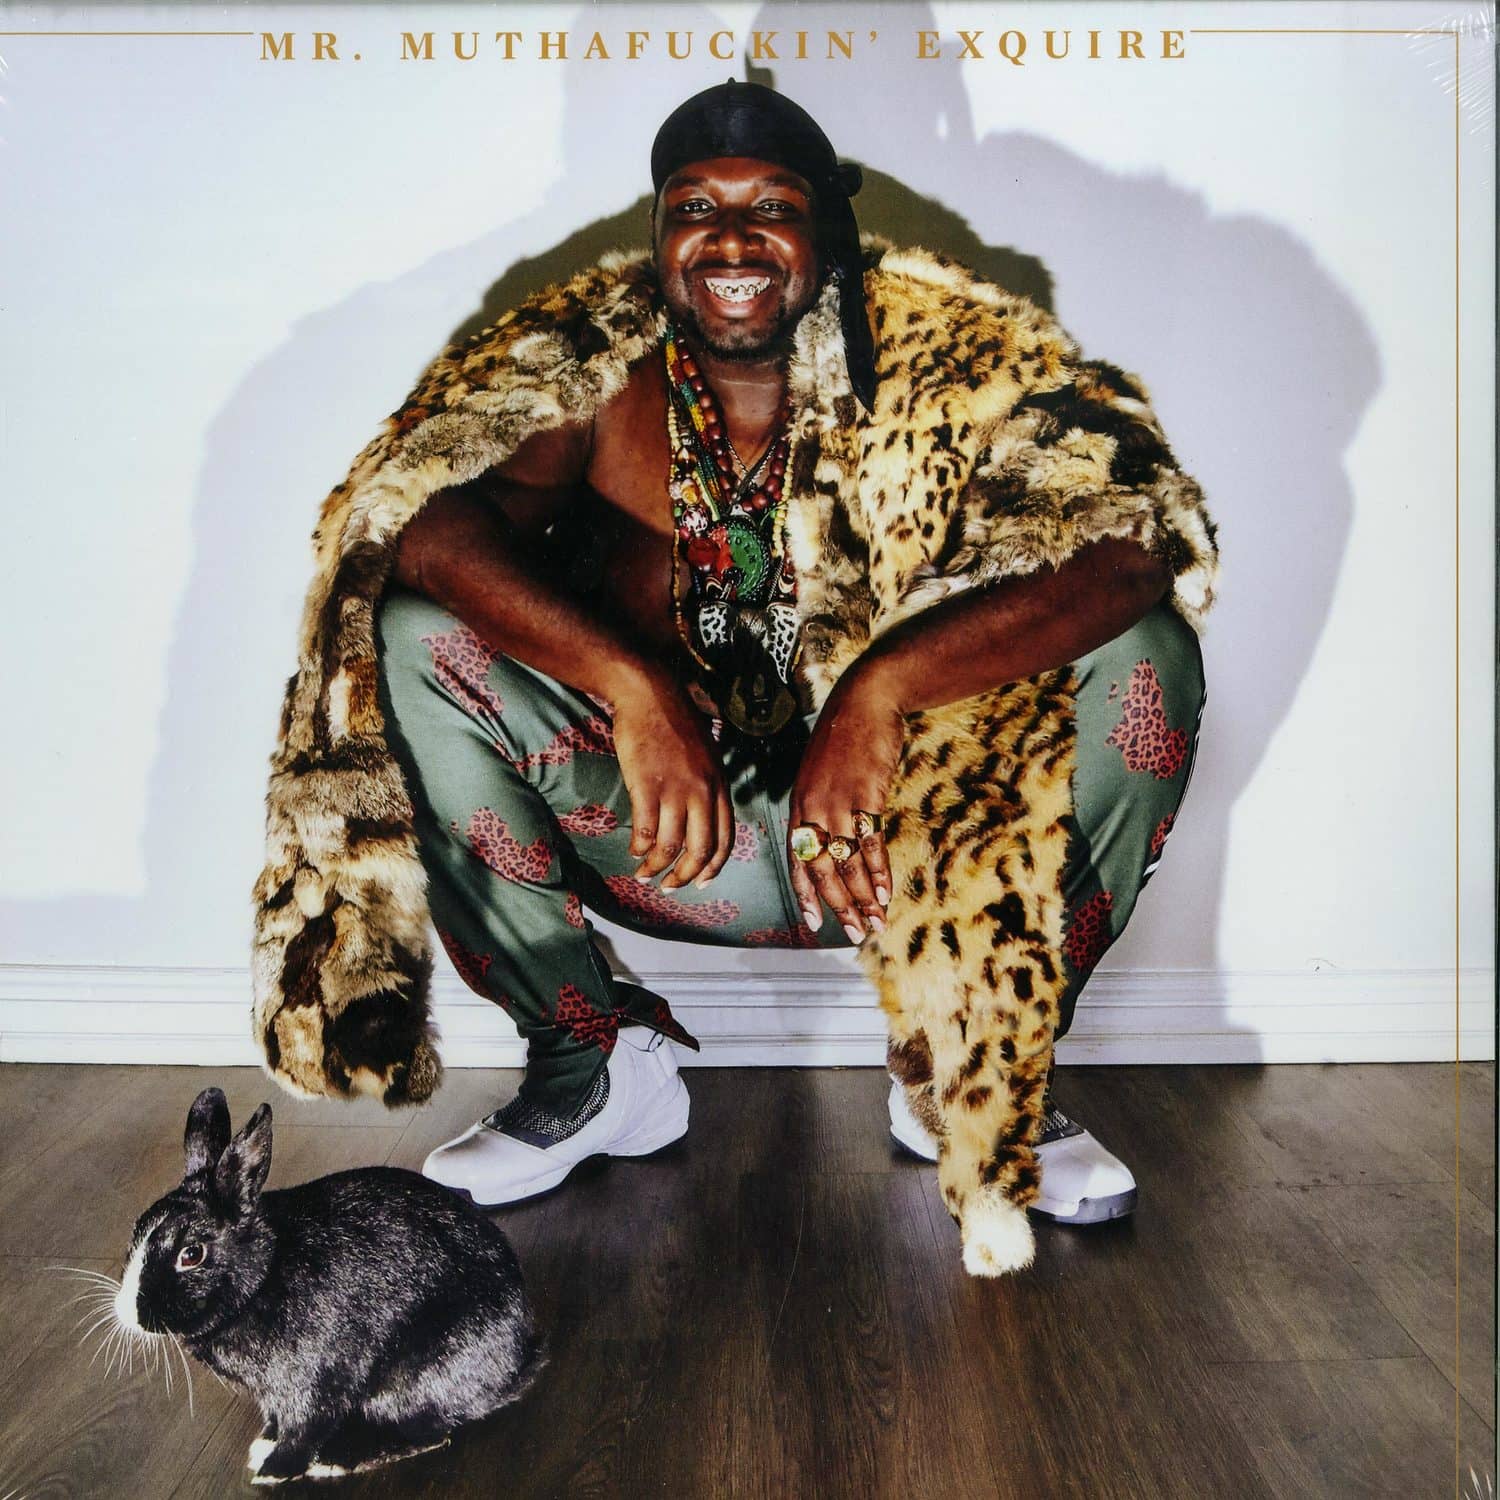 Mr. Muthafuckin Exquire - MR. MUTHAFUCKIN EXQUIRE 